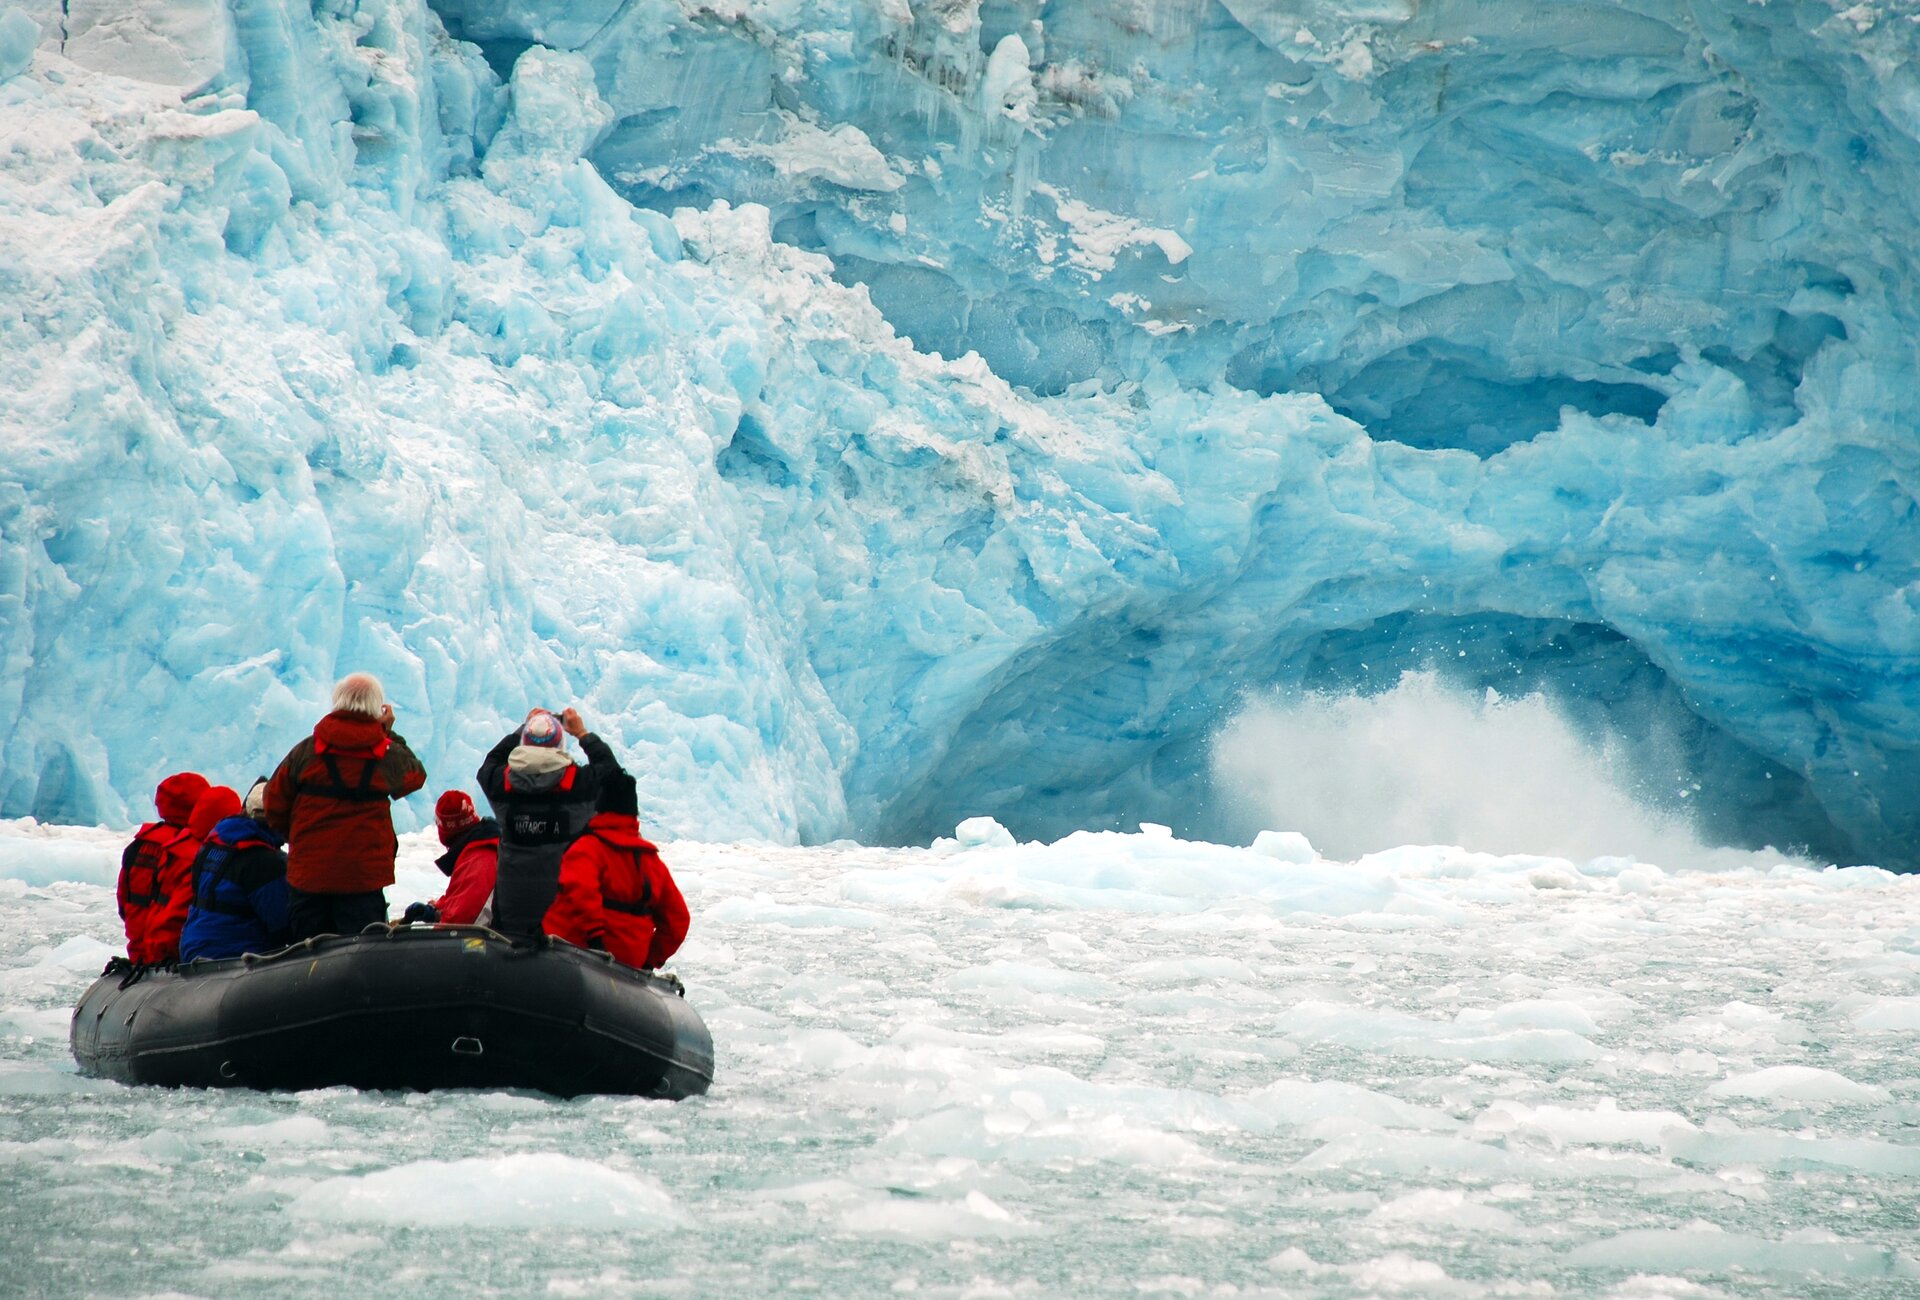 Na zdjęciu lodowiec schodzący bezpośrednio do wód morskich. Widać kawałku lodu w ruchu. Spiętrzona woda pokryta krą, ludzie w pontonie fotografują czoło lodowca.